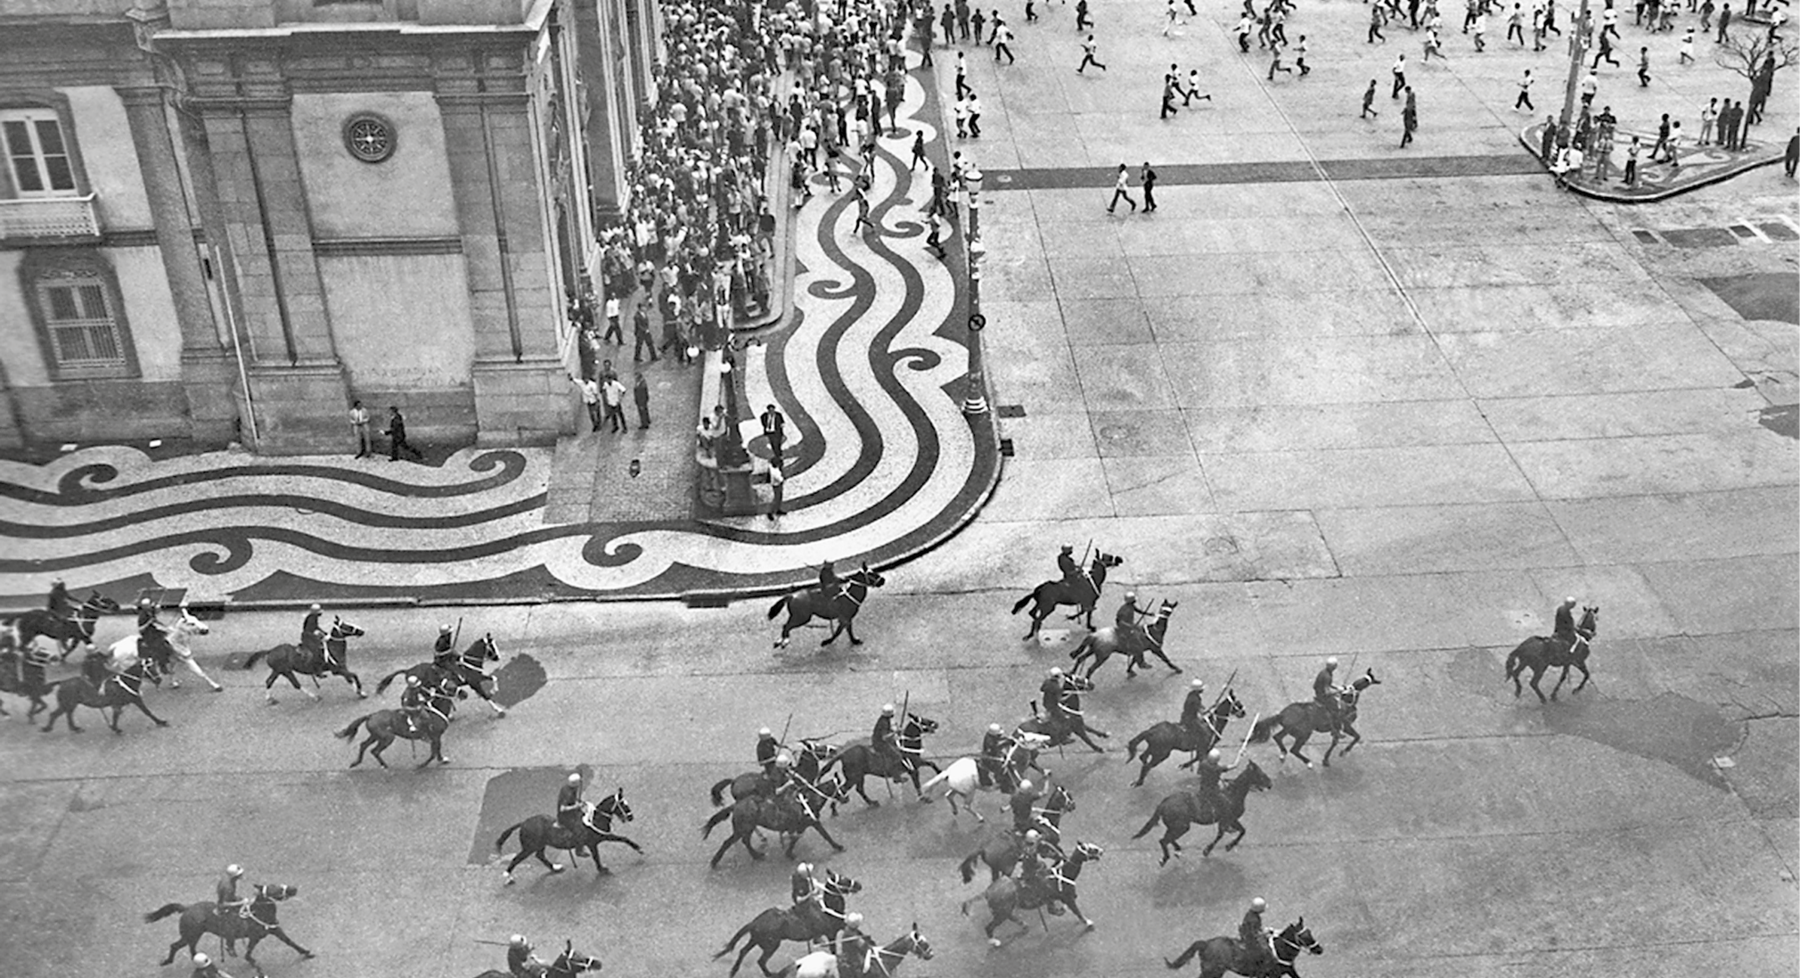 Fotografia em preto e branco. Militares montados em cavalos dispersam a multidão em uma larga avenida.